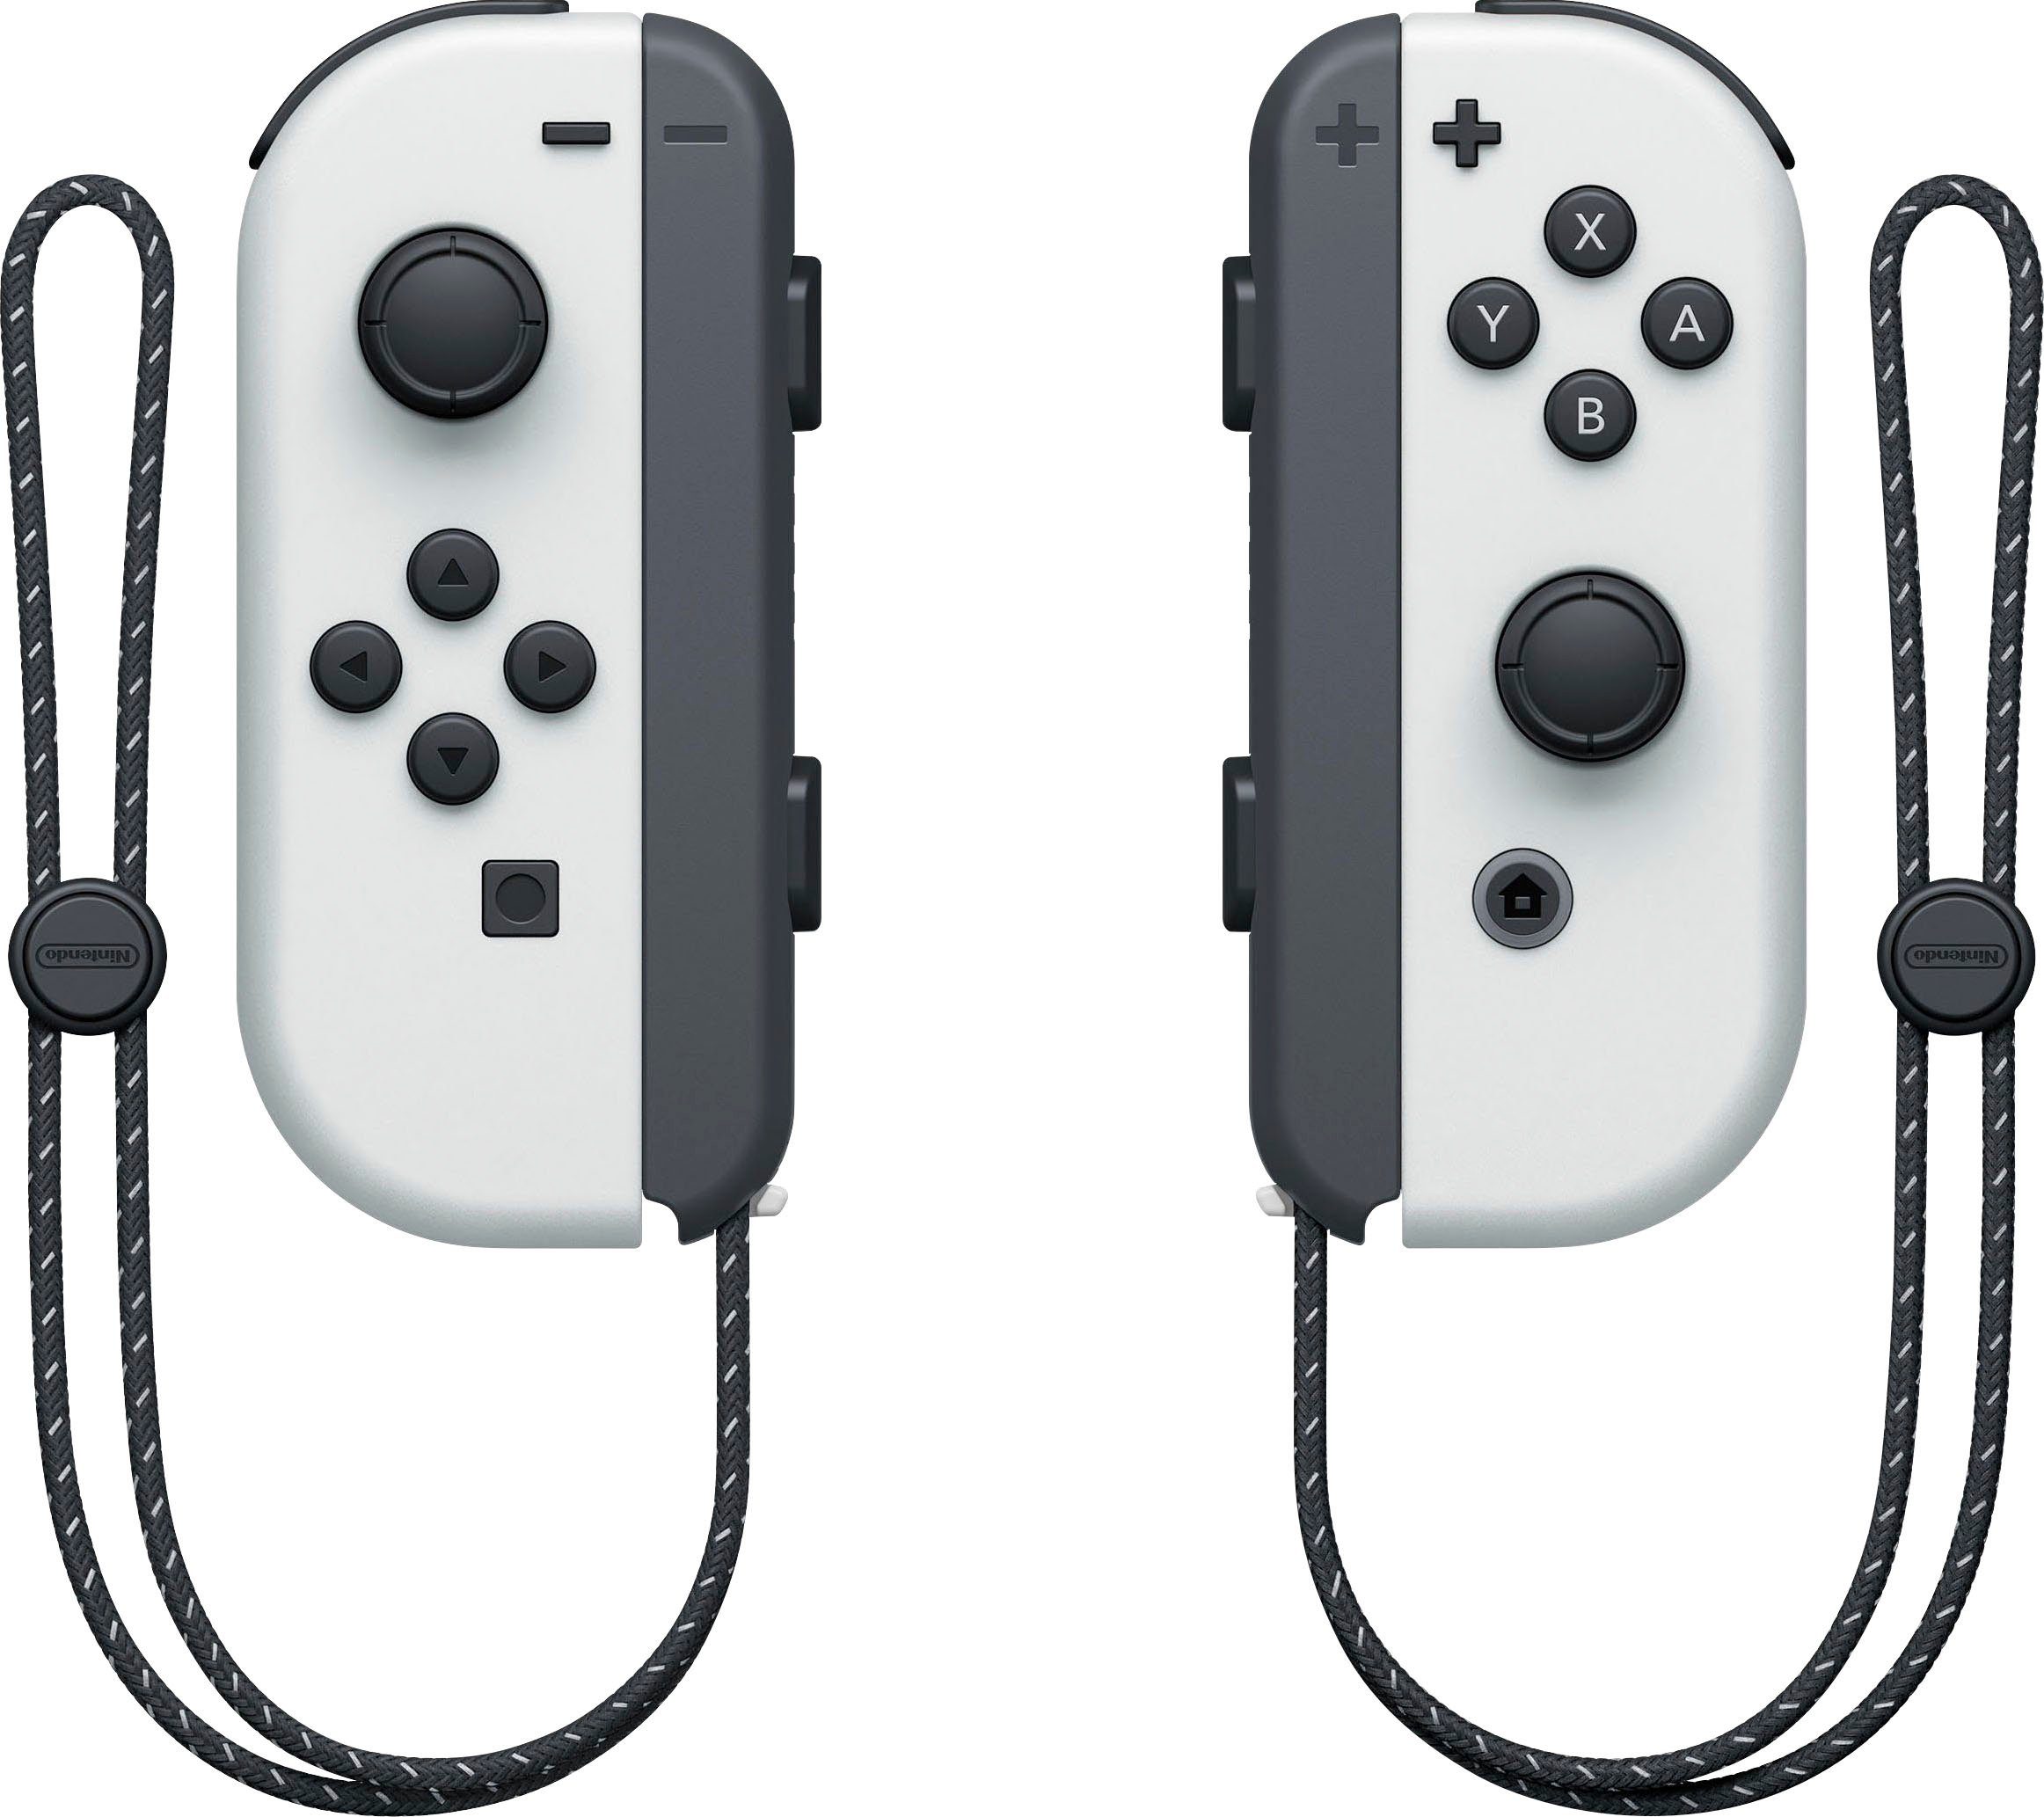 Nintendo Legenden Switch, Pokémon Arceus OLED-Modell, inkl.